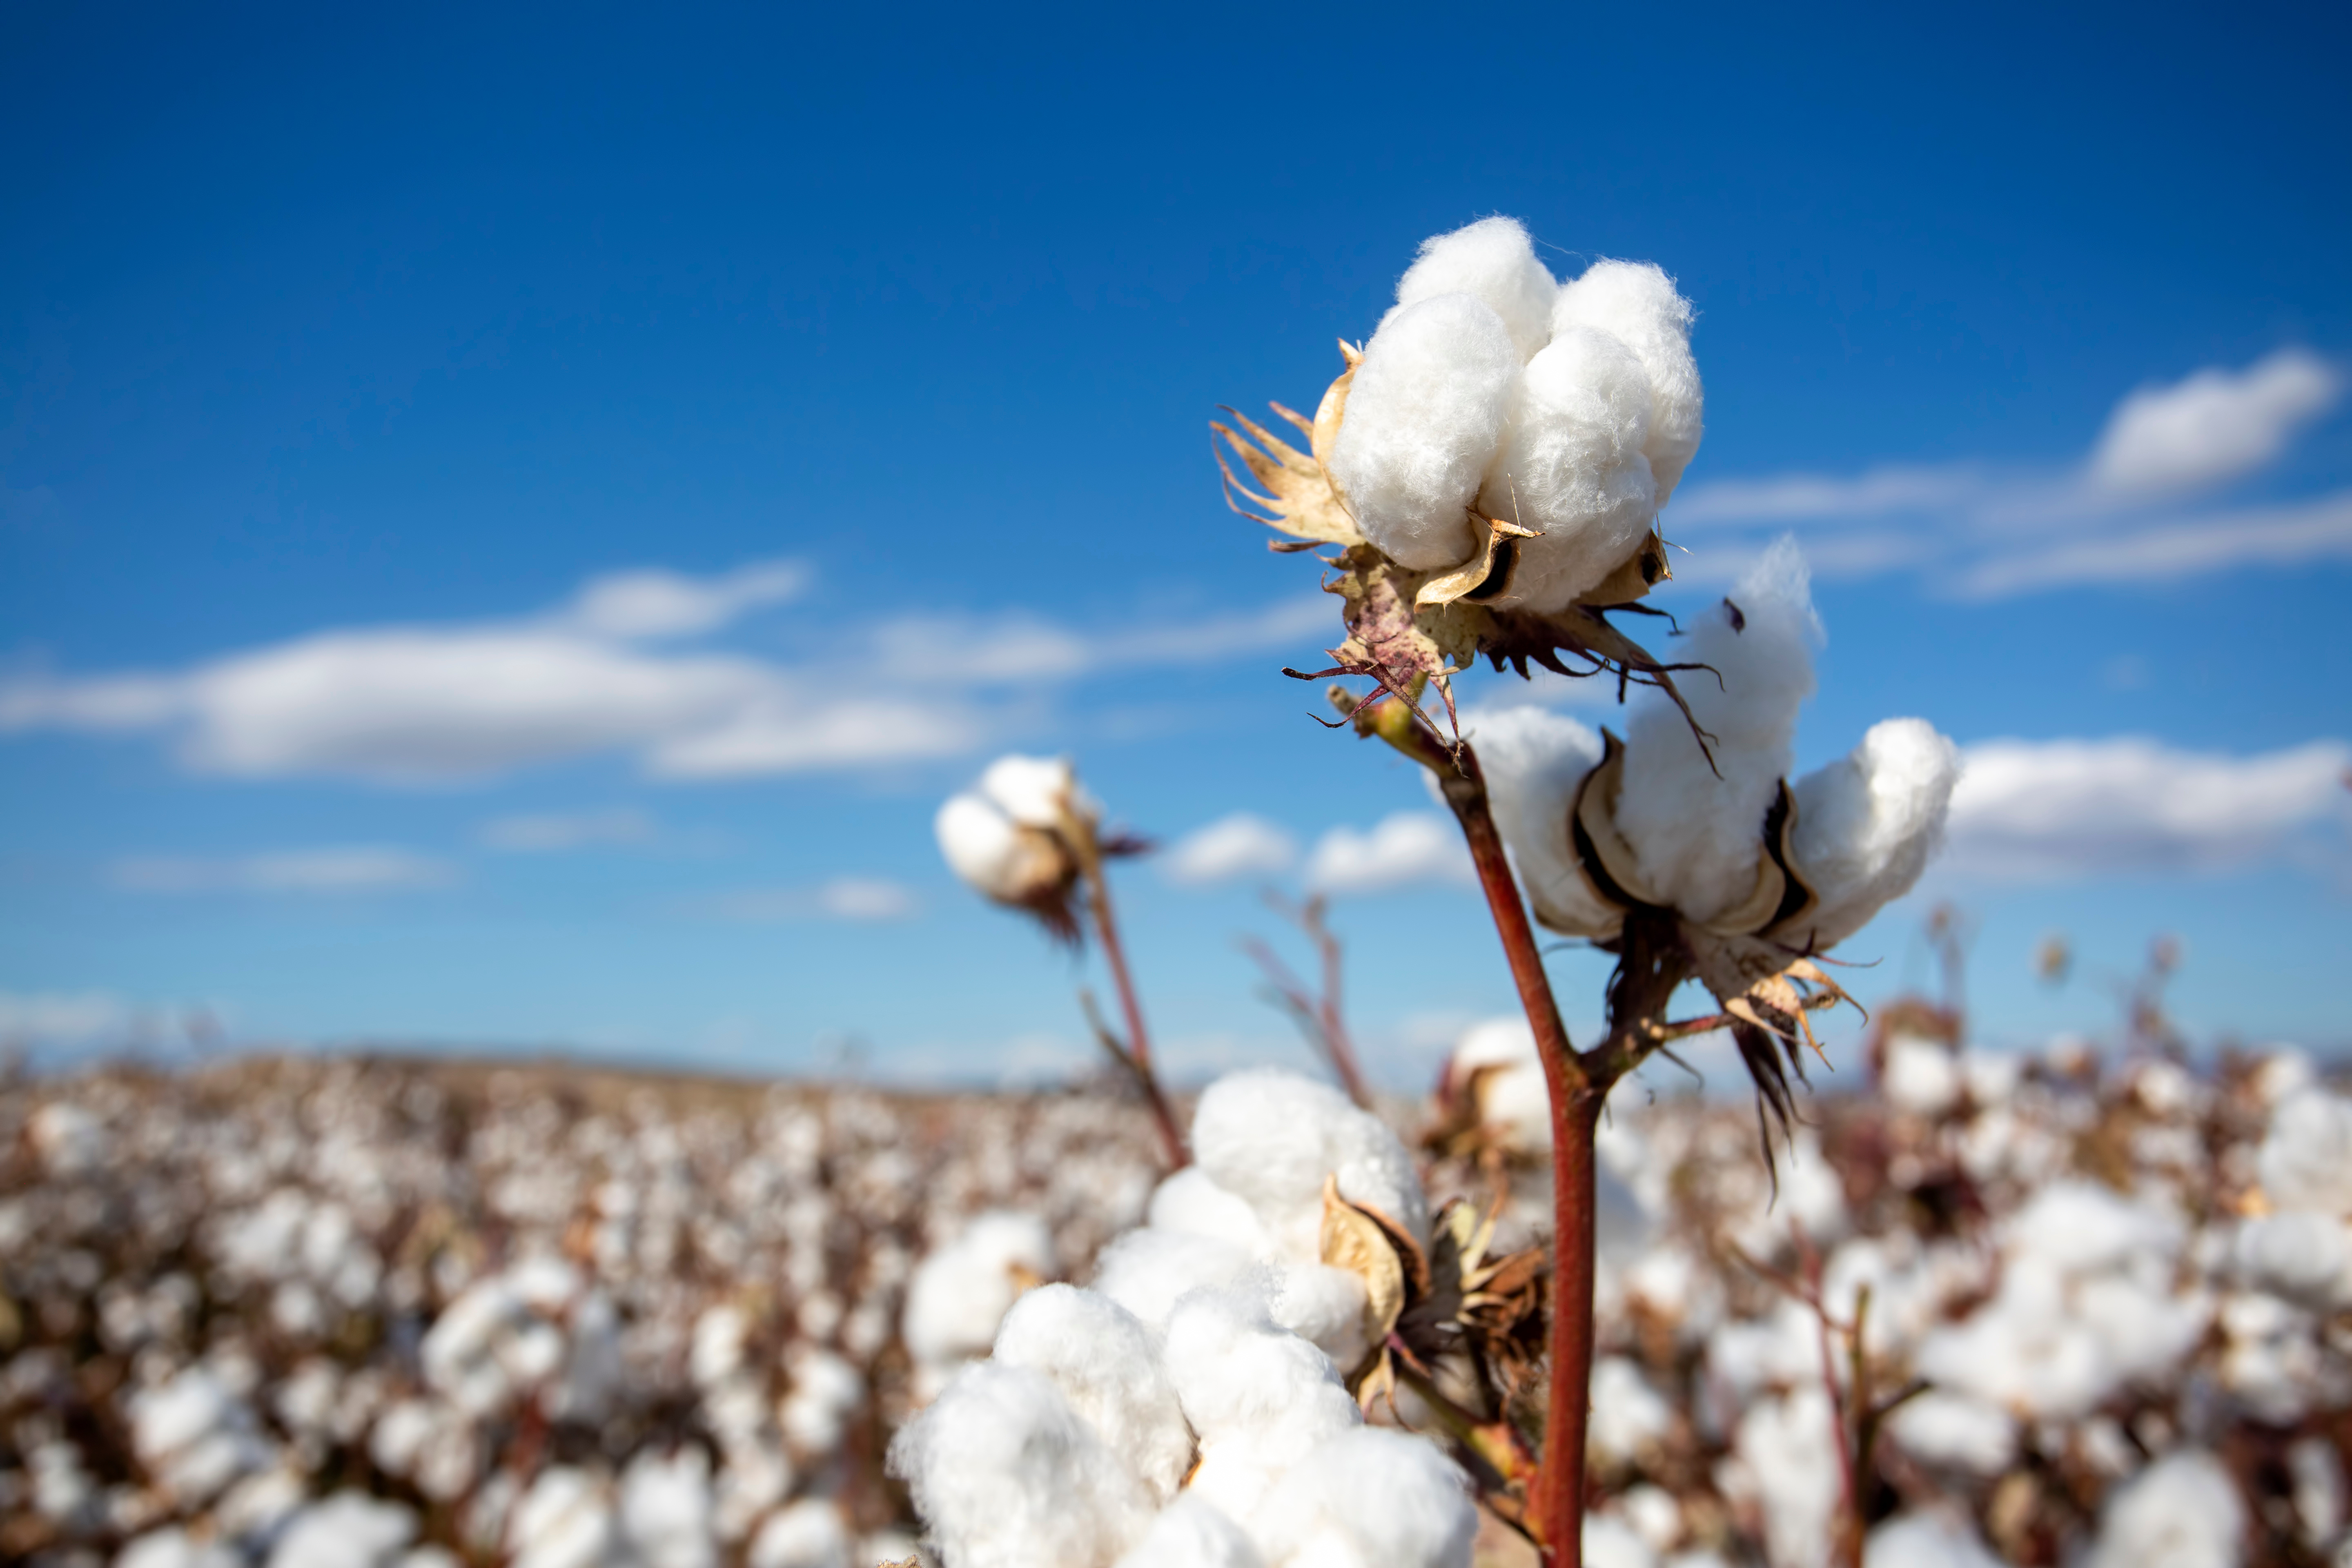 Australian Cotton  The Current Australian Cotton Crop